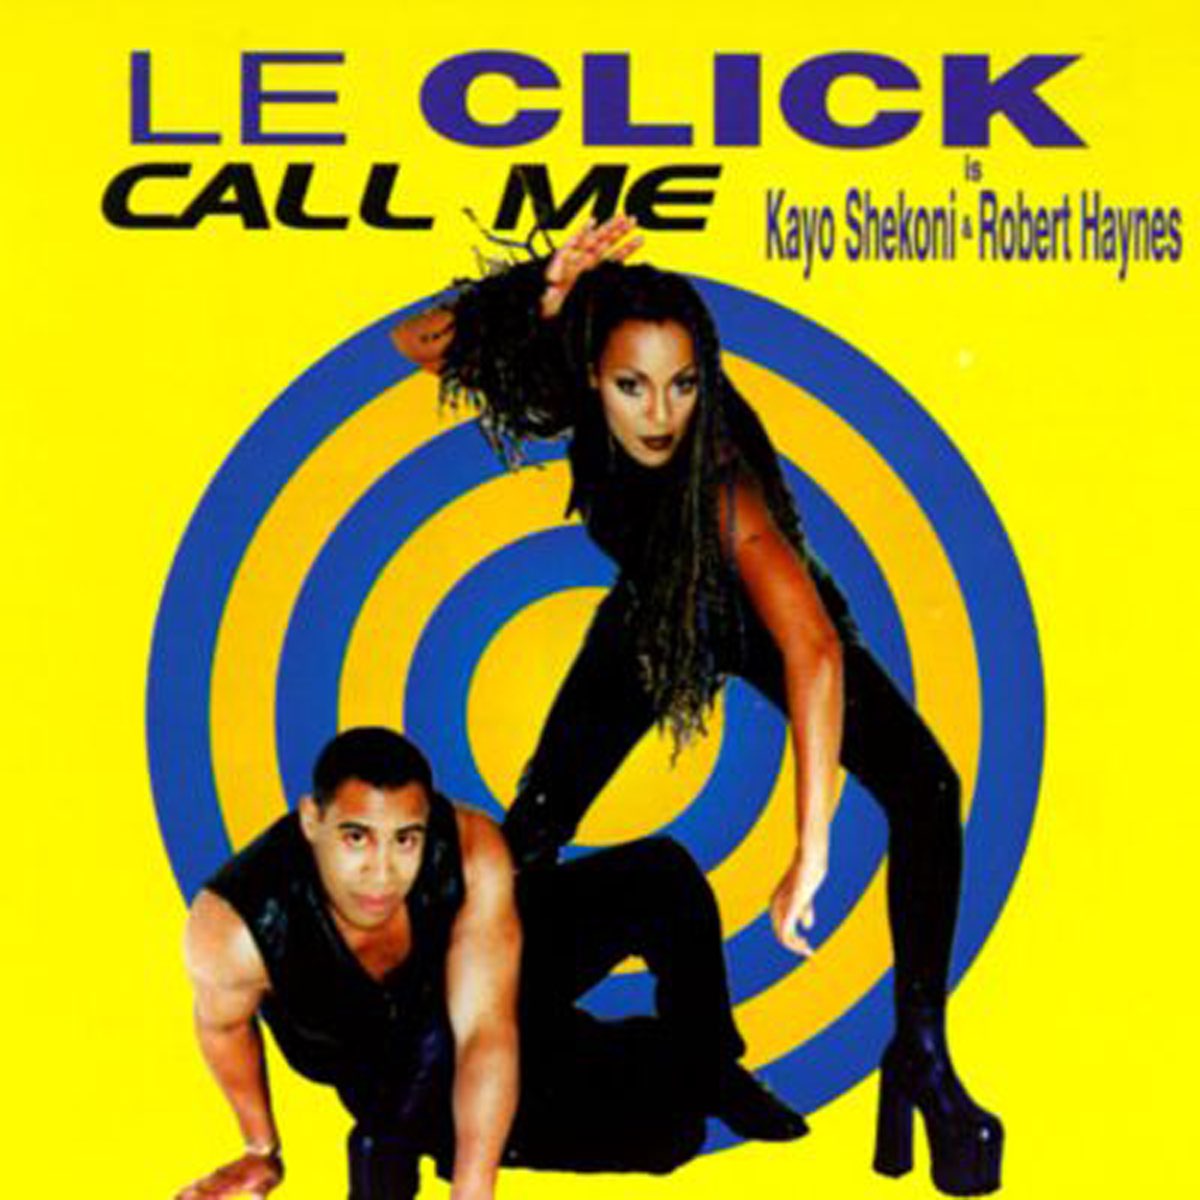 Le click - Call me. Le click 1997 Call me. Le click группа. Le click